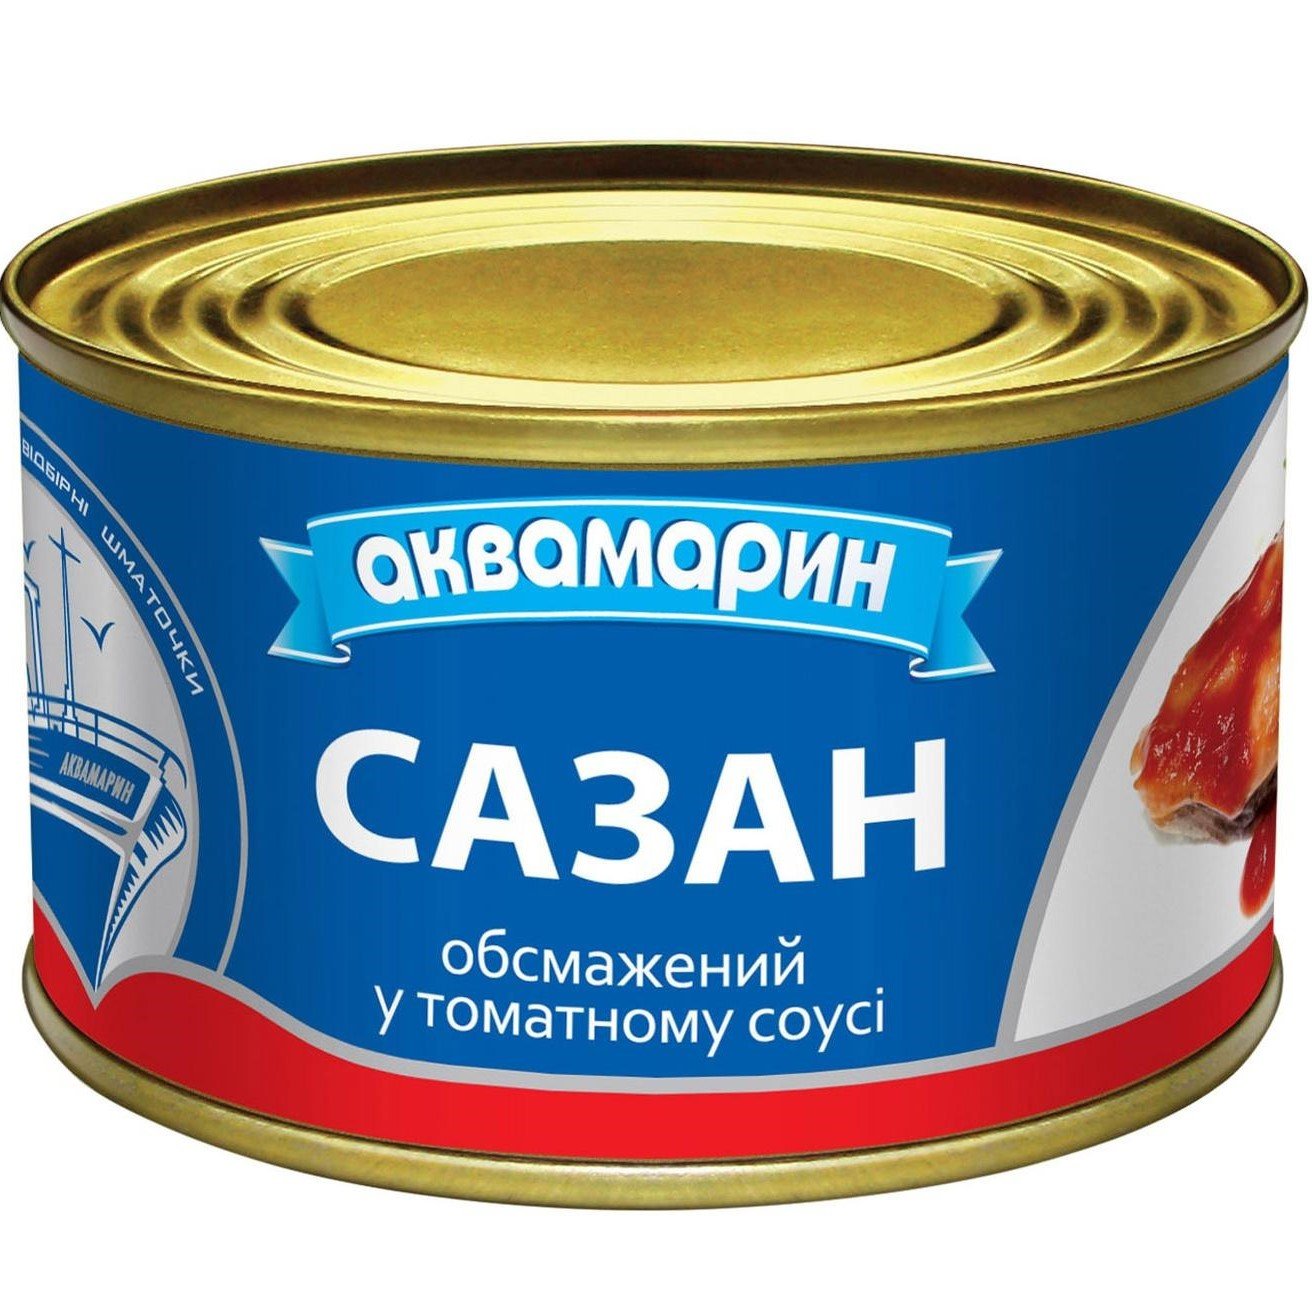 Сазан Аквамарин обжаренный в томатном соусе 230 г (712817) - фото 1